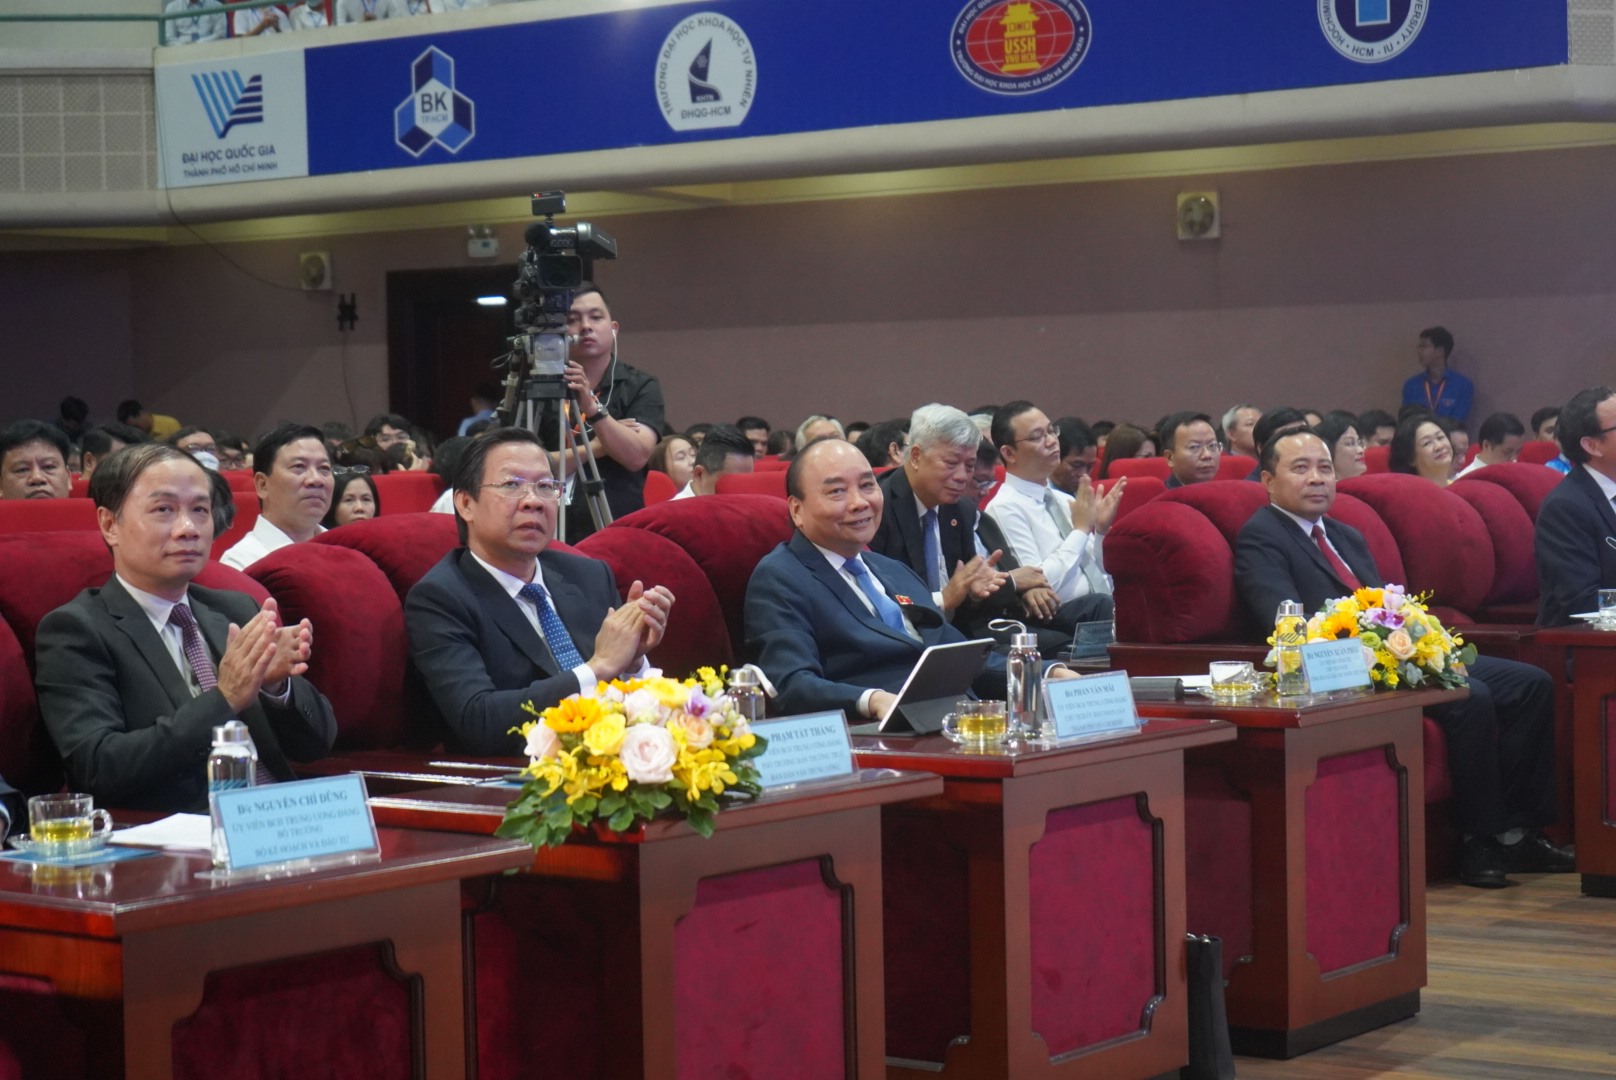 Chủ tịch Nguyễn Xuân Phúc và nhiều uỷ viên Trung ương Đảng đến dự sự kiện. Ảnh: Phương Ngân